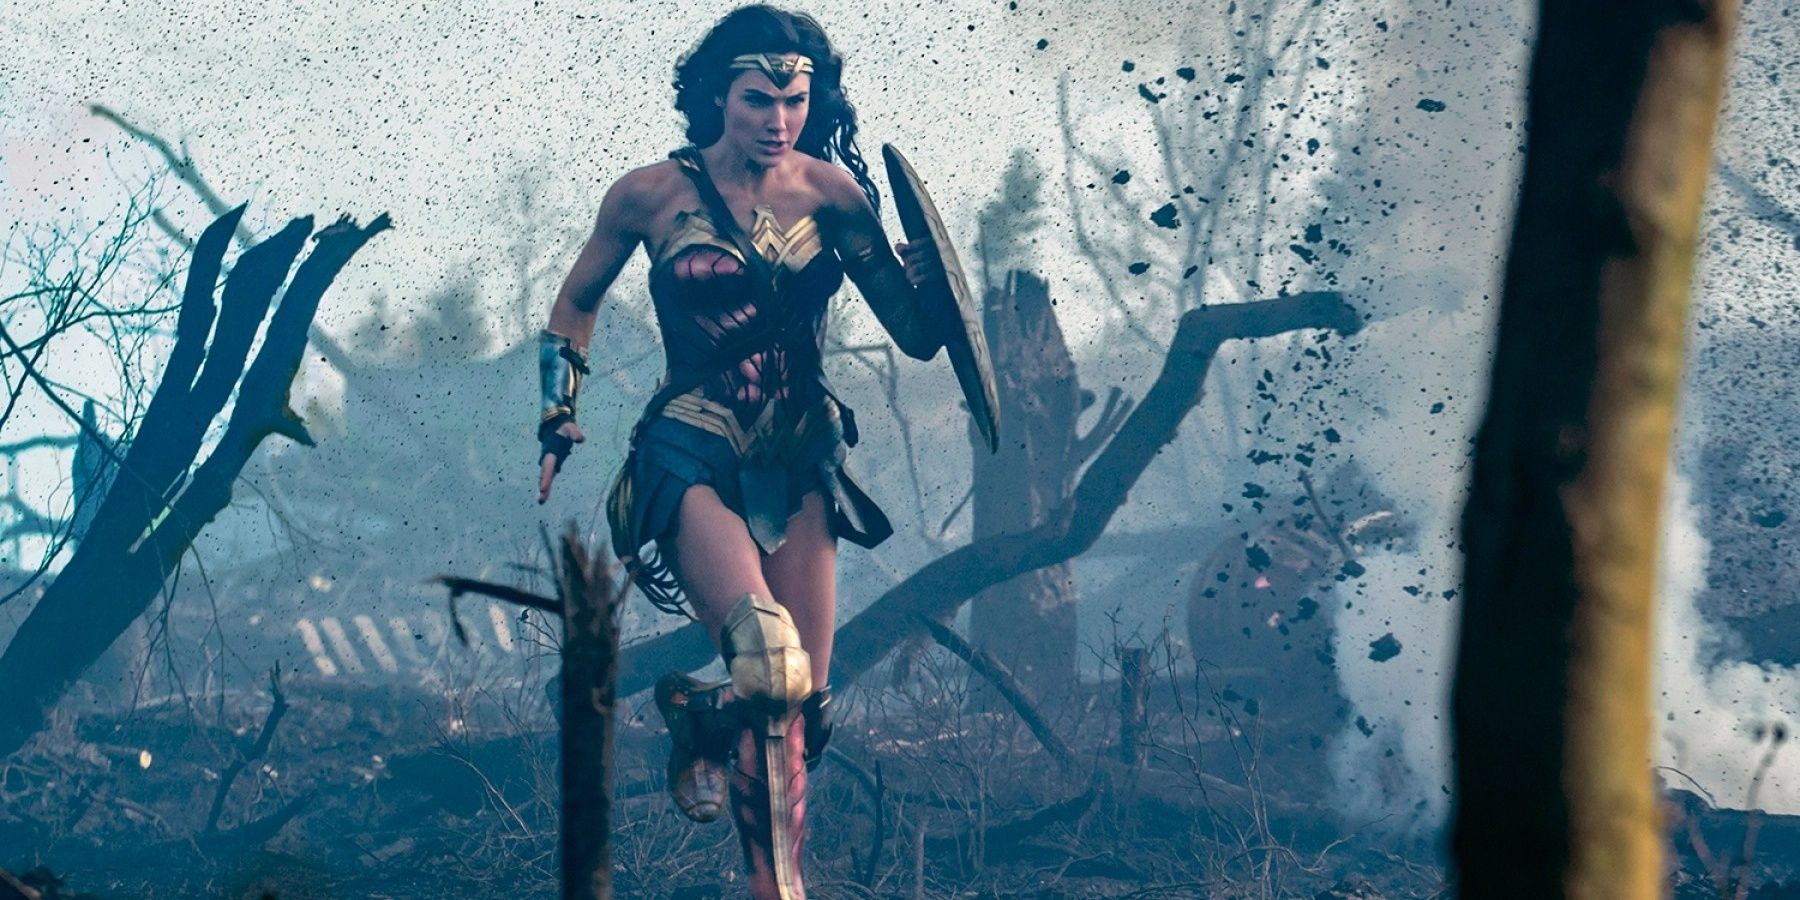 Wonder Woman runs through battlefield